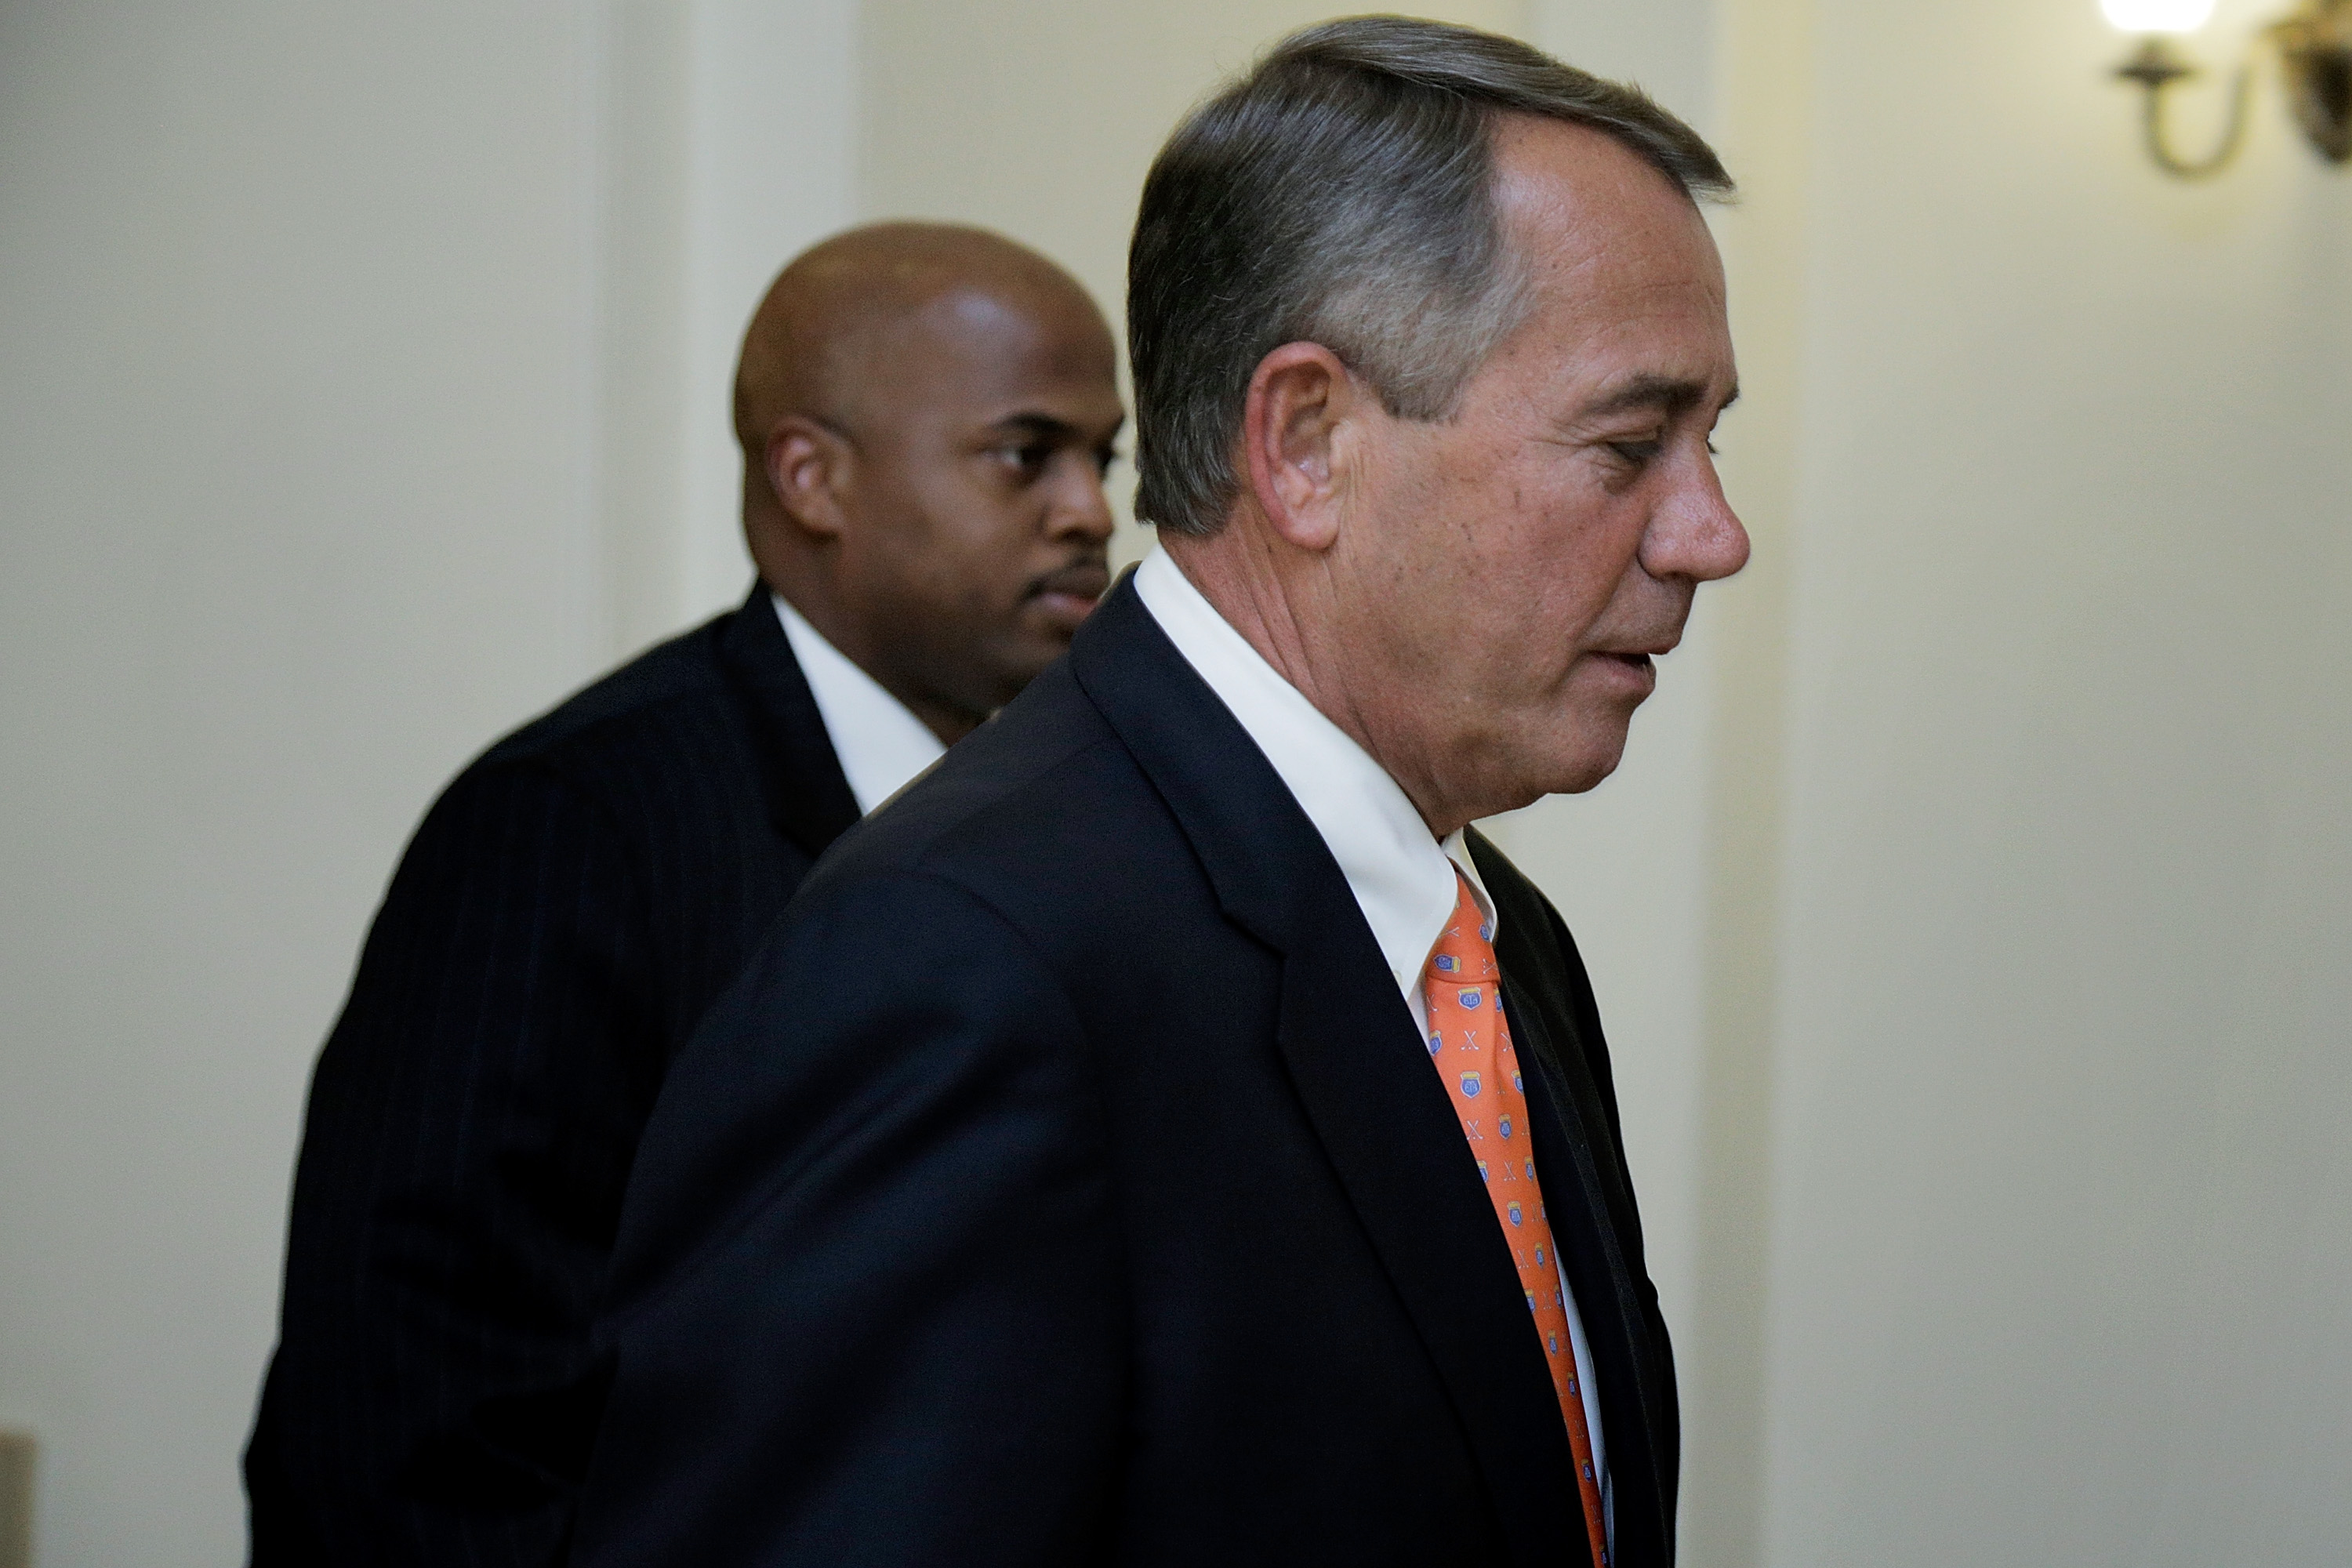 John Boehner is still losing the D.C. popularity contest